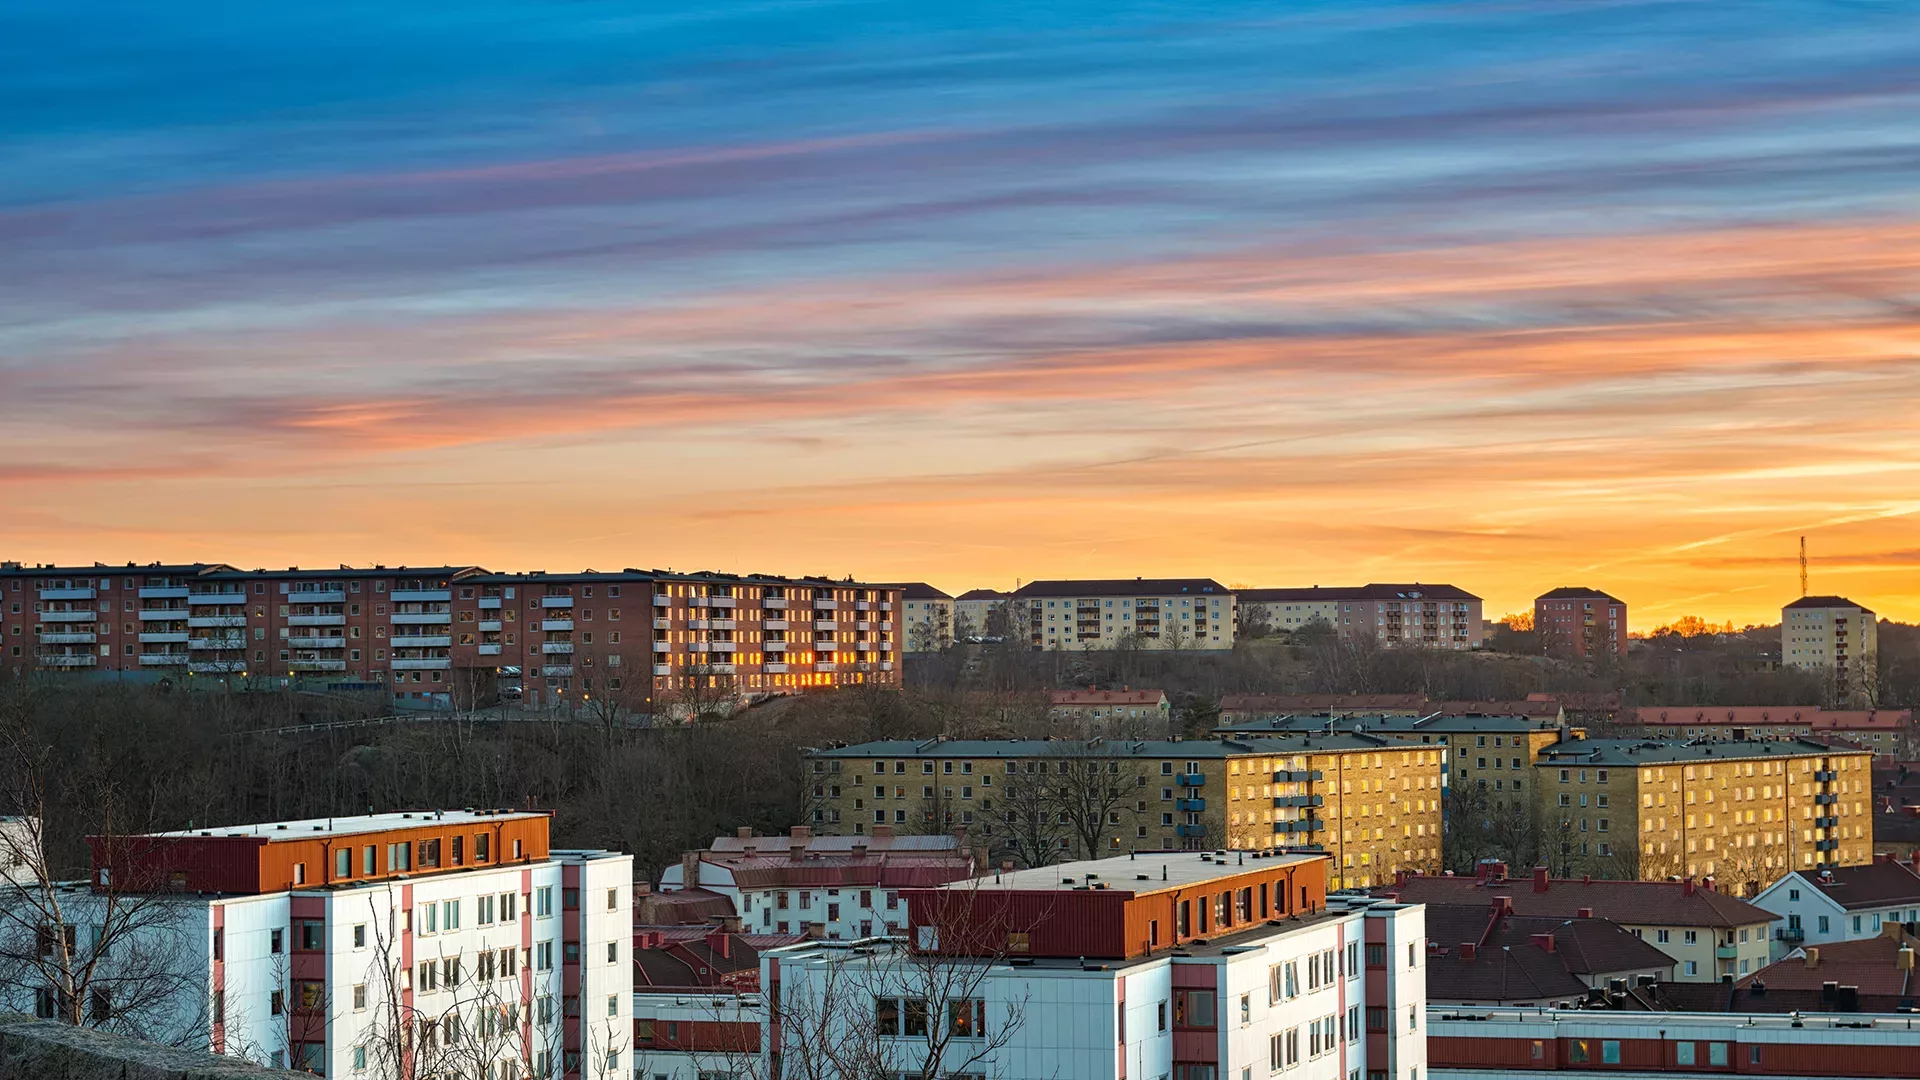 Stockholm housing block at sunset